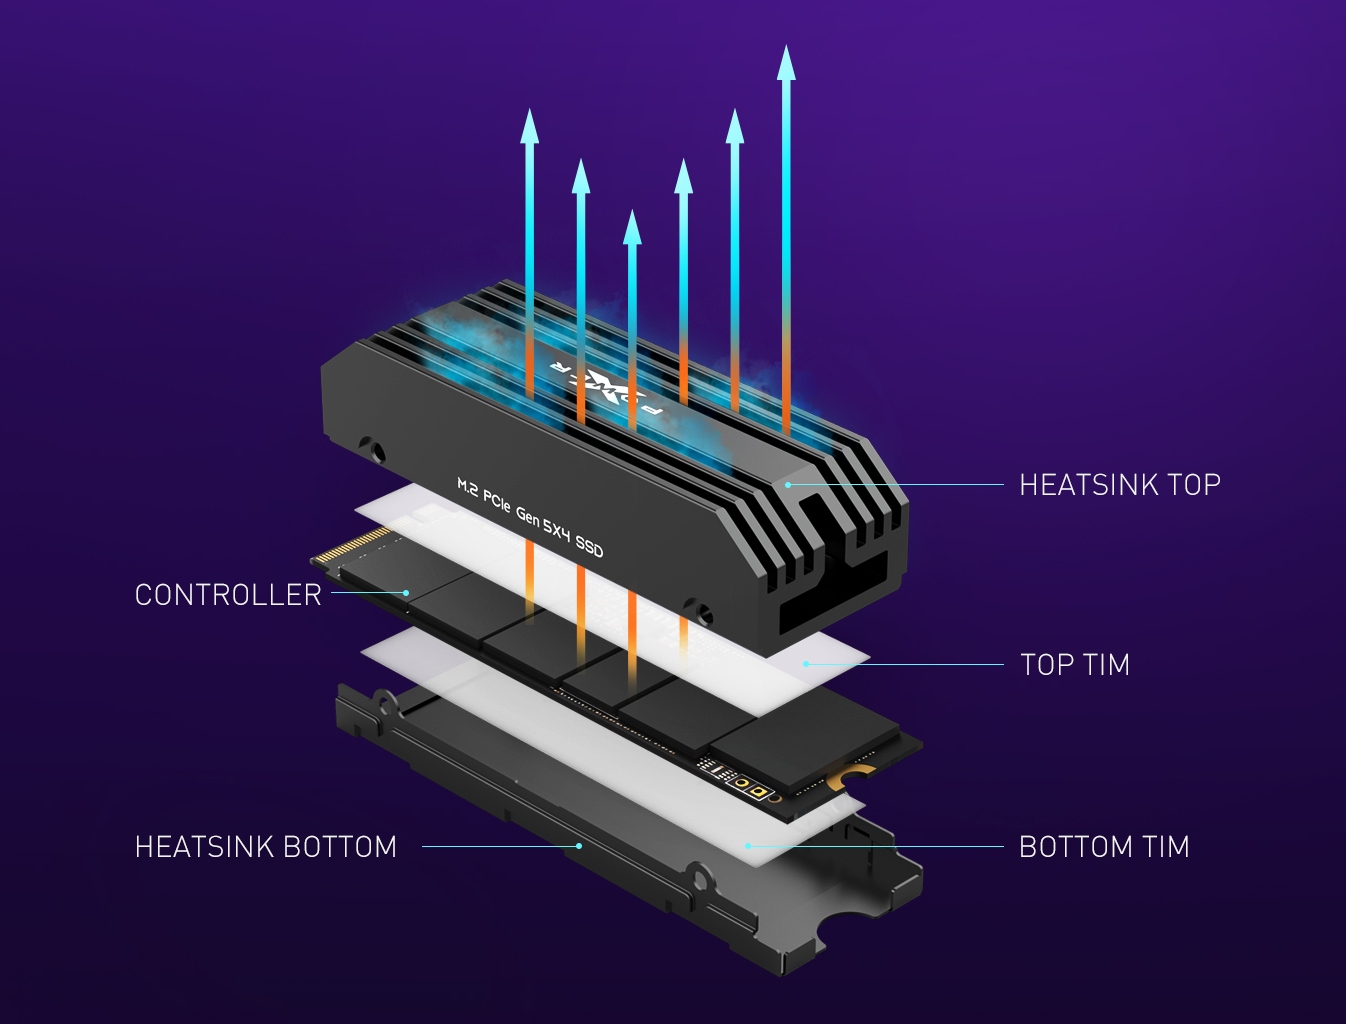 Immagine pubblicata in relazione al seguente contenuto: Silicon Power presenta gli SSD PCIe 5.0 XPower XS80 con velocit fino a 10GB/s | Nome immagine: news34912_Silicon-Power_XPower-XS80_SSD_3.jpg